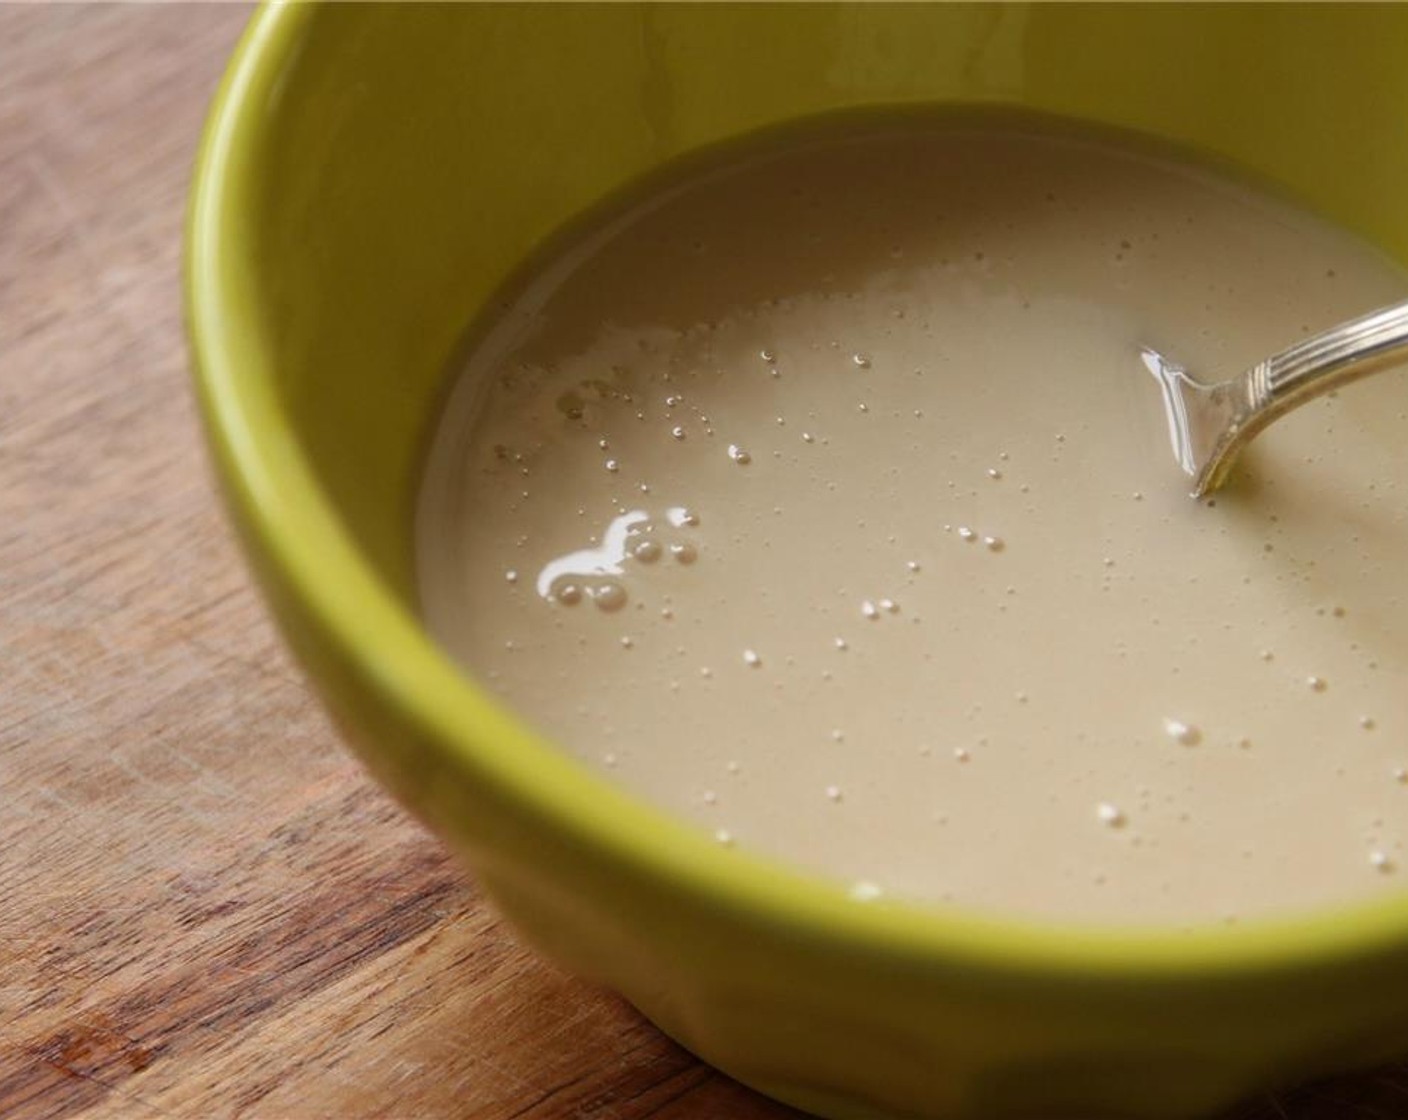 Schritt 8 Für die Glasur: Puderzucker (120 g), Ahornsirup (4 Esslöffel) und Mandelmilch (1 TL) mit einer Gabel verrühren, bis sie sich vollständig verbunden haben. Wenn eine dünnere Konsistenz gewünscht ist, mehr Milch hinzufügen.